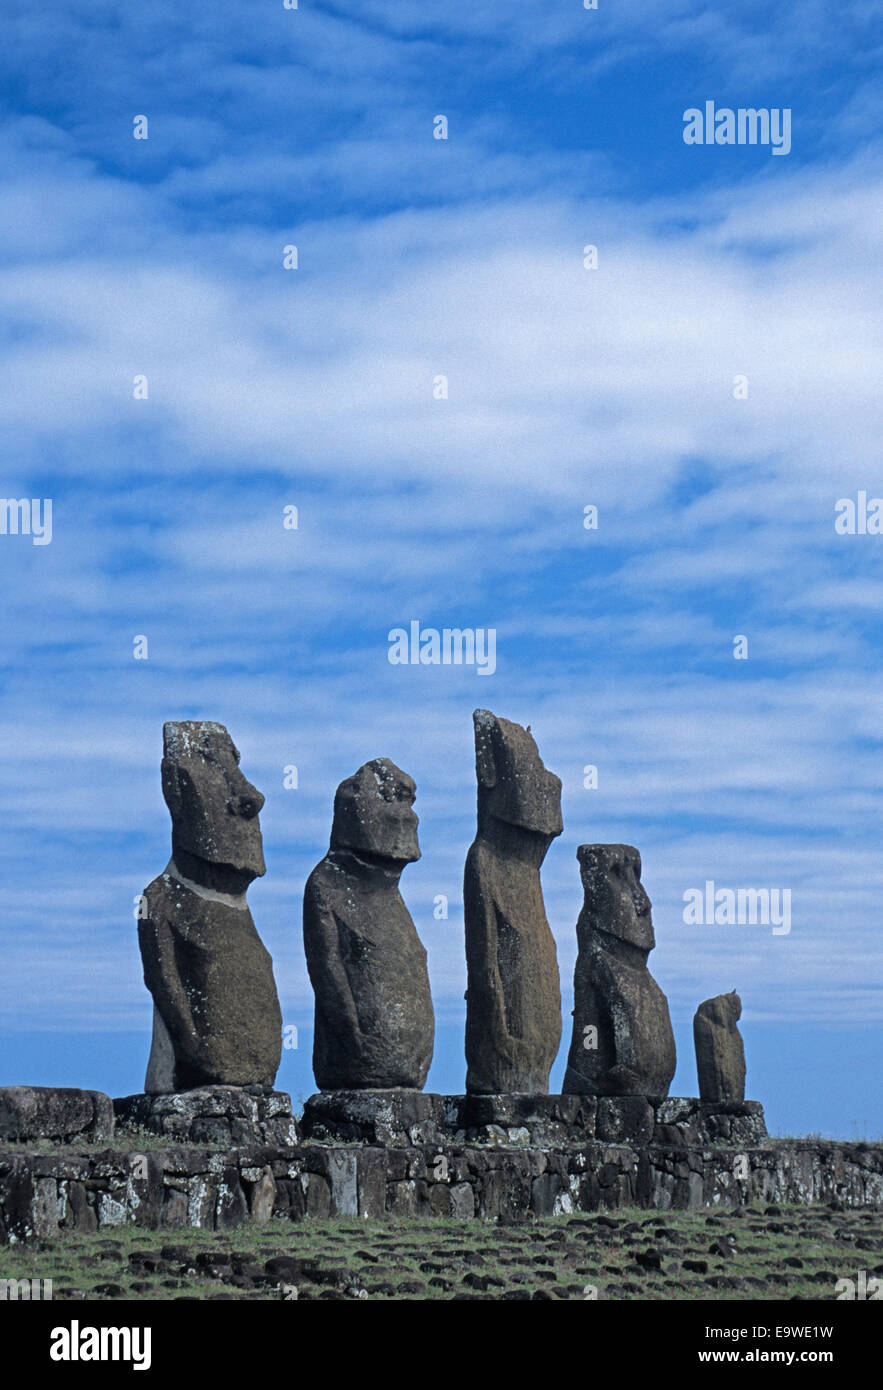 Ahu Tahai moai on Rapa Nui (Easter Island). Stock Photo